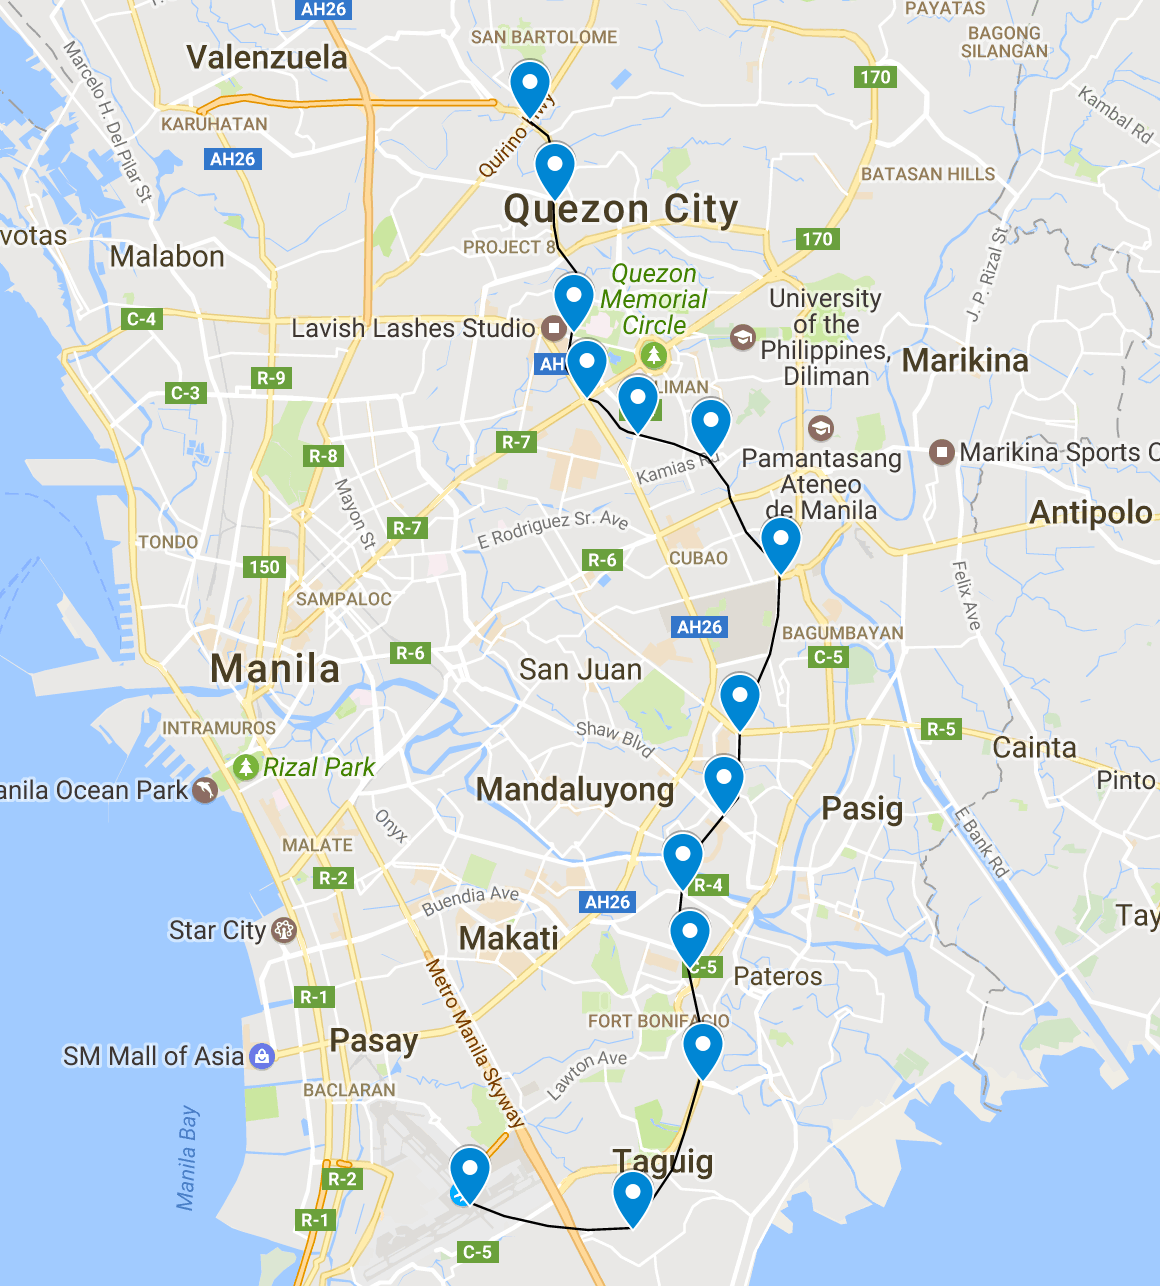 马尼拉地铁项目,这个是近年来马尼拉最重要的一个项目，由日本贷款援建，并由日本公司承建，2019年动工，目前正在紧锣密鼓的建设中，预计2022年或者2023年能开通前三个站。即便因为疫情和菲律宾本身的低效率等原因推迟通车时间，但建成是迟早的事情，日本的基建效率和技术还是值得信赖的。